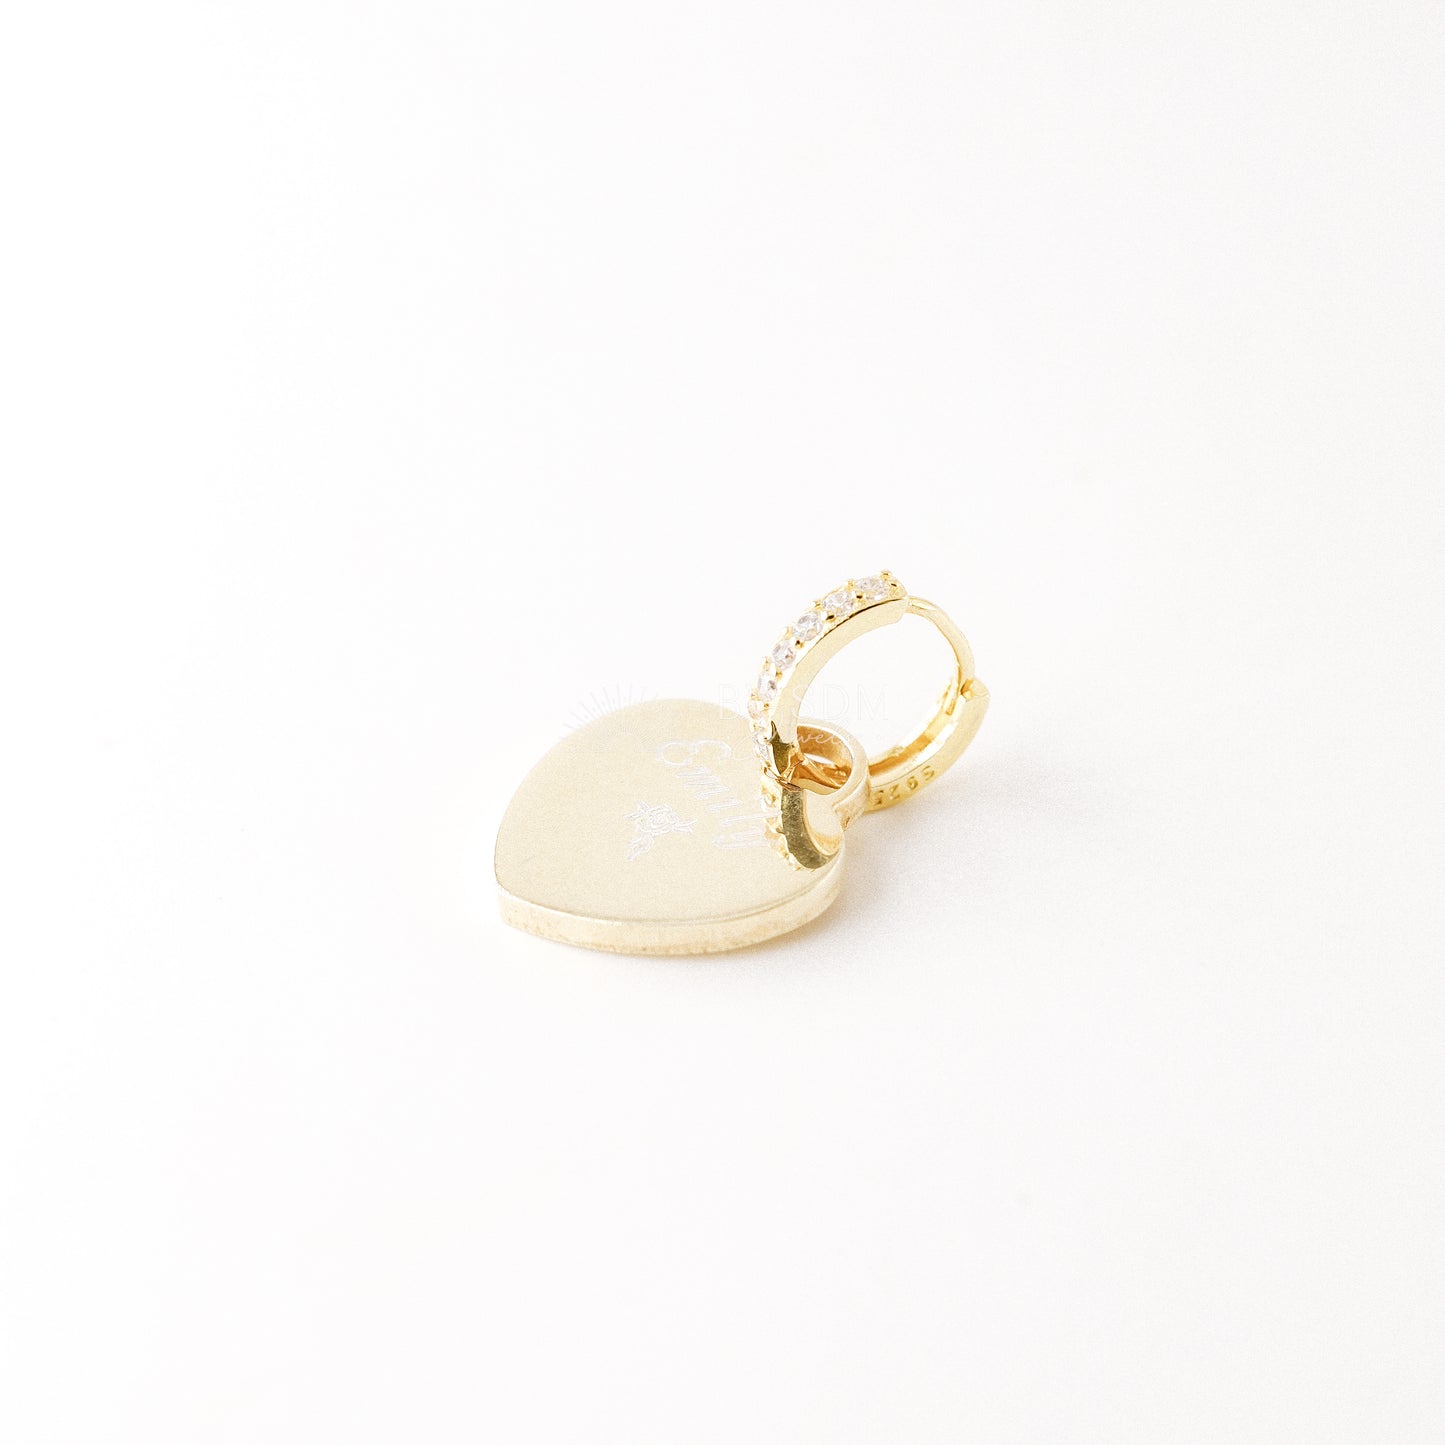 Engraved Hoop Earrings • Custom Name Heart Tag • Charm Earrings • Personalized Heart • Personalized Earrings • BYSDMJEWELS